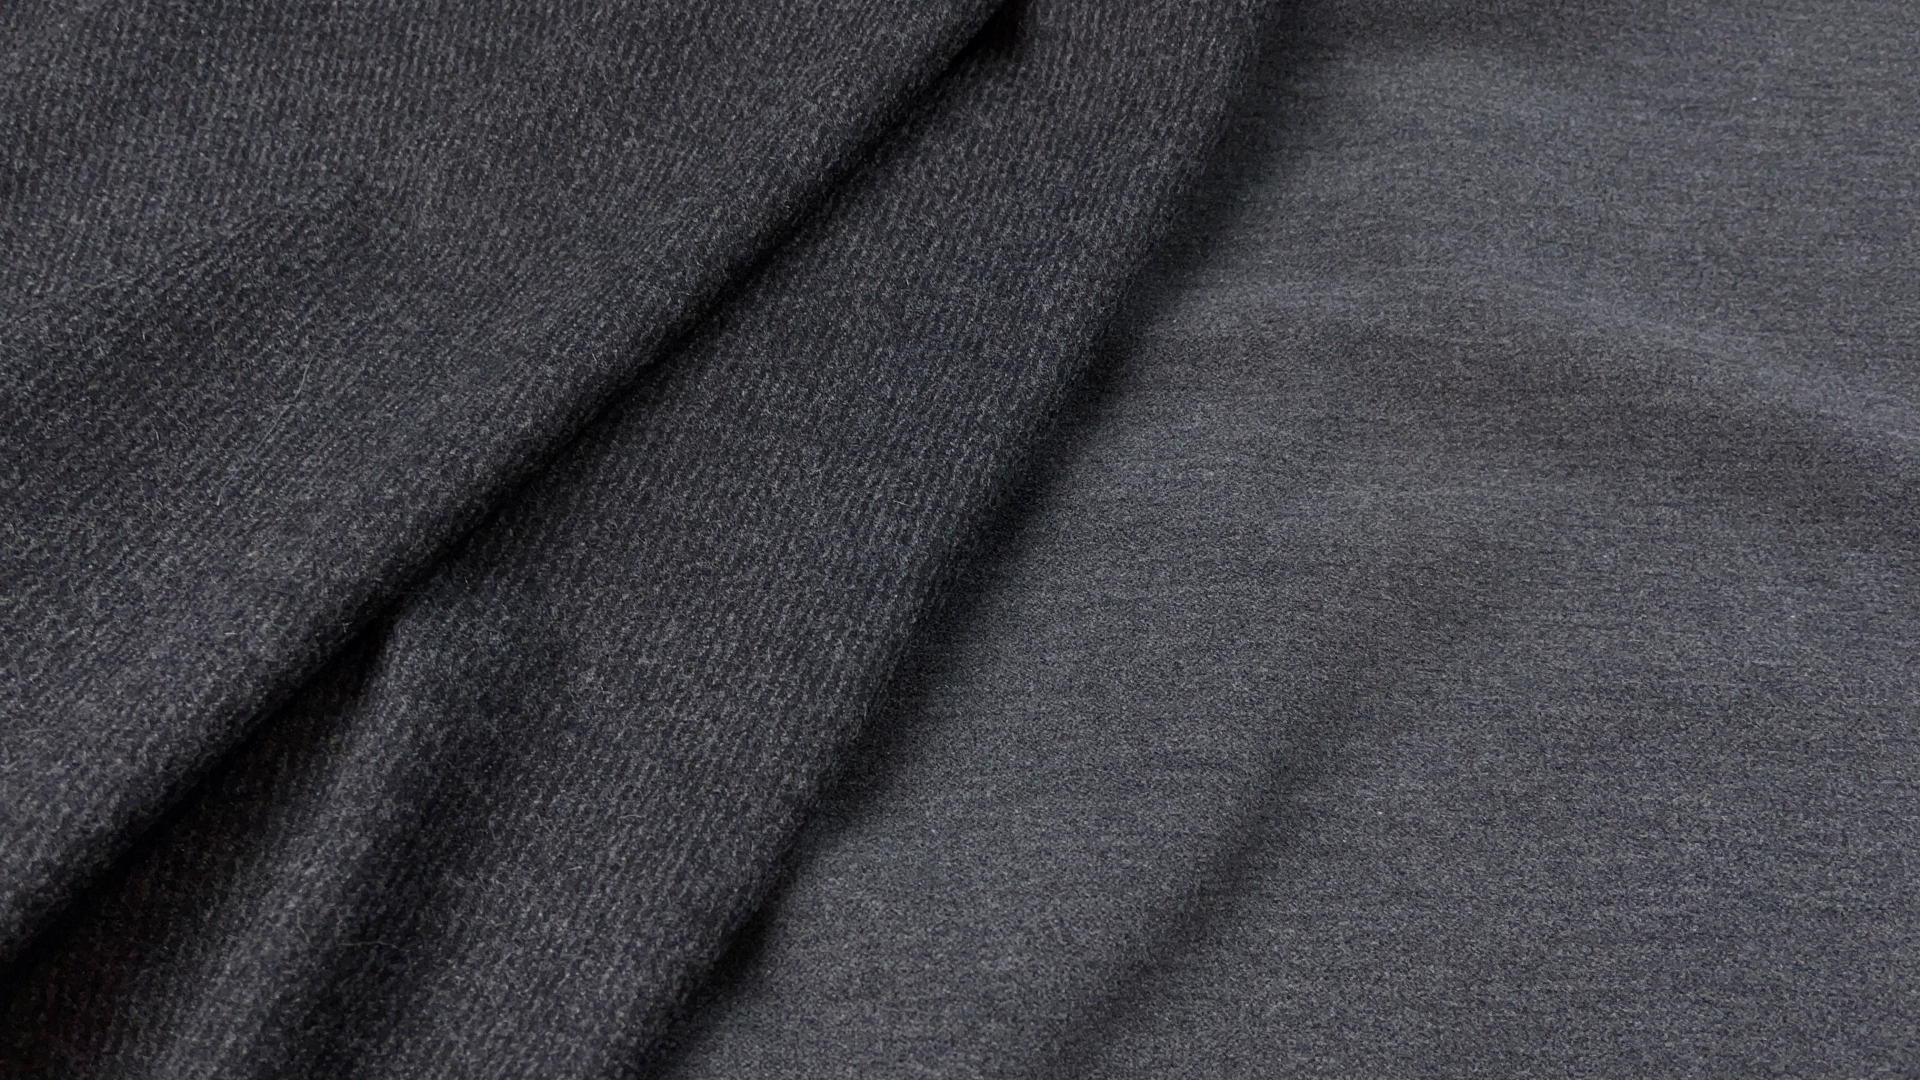 Пальтово-костюмная ткань из коллекционного стока. Цвет серый. Полотно с одной стороны имеет мягкую велюровую выработку. Плотность 490 гр м.п., для теплой юбки, жакета, кардигана или для облегченного пальто.